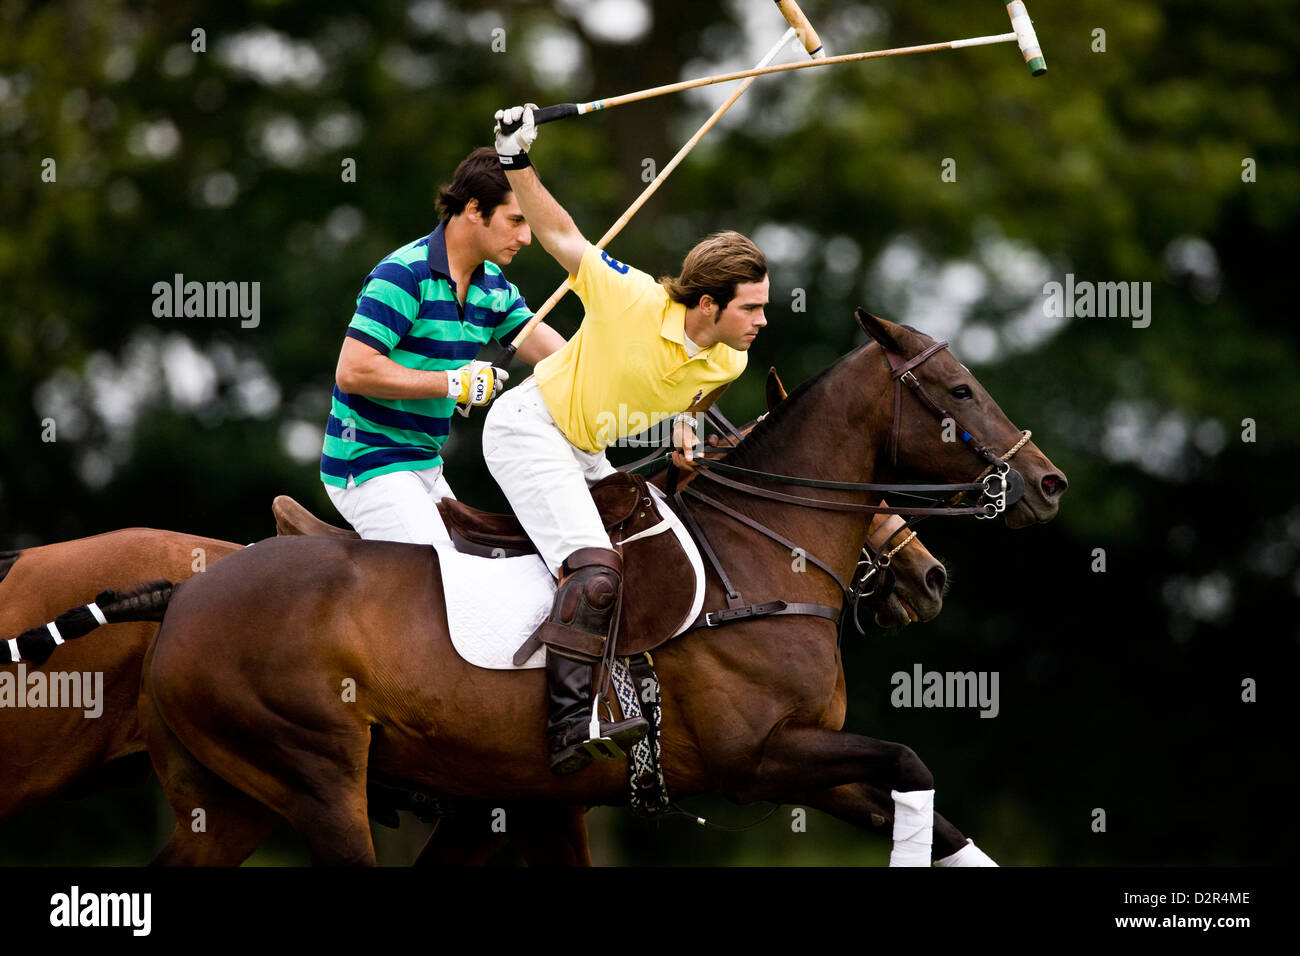 Polo player holding rênes et frapper la balle à cheval Banque D'Images